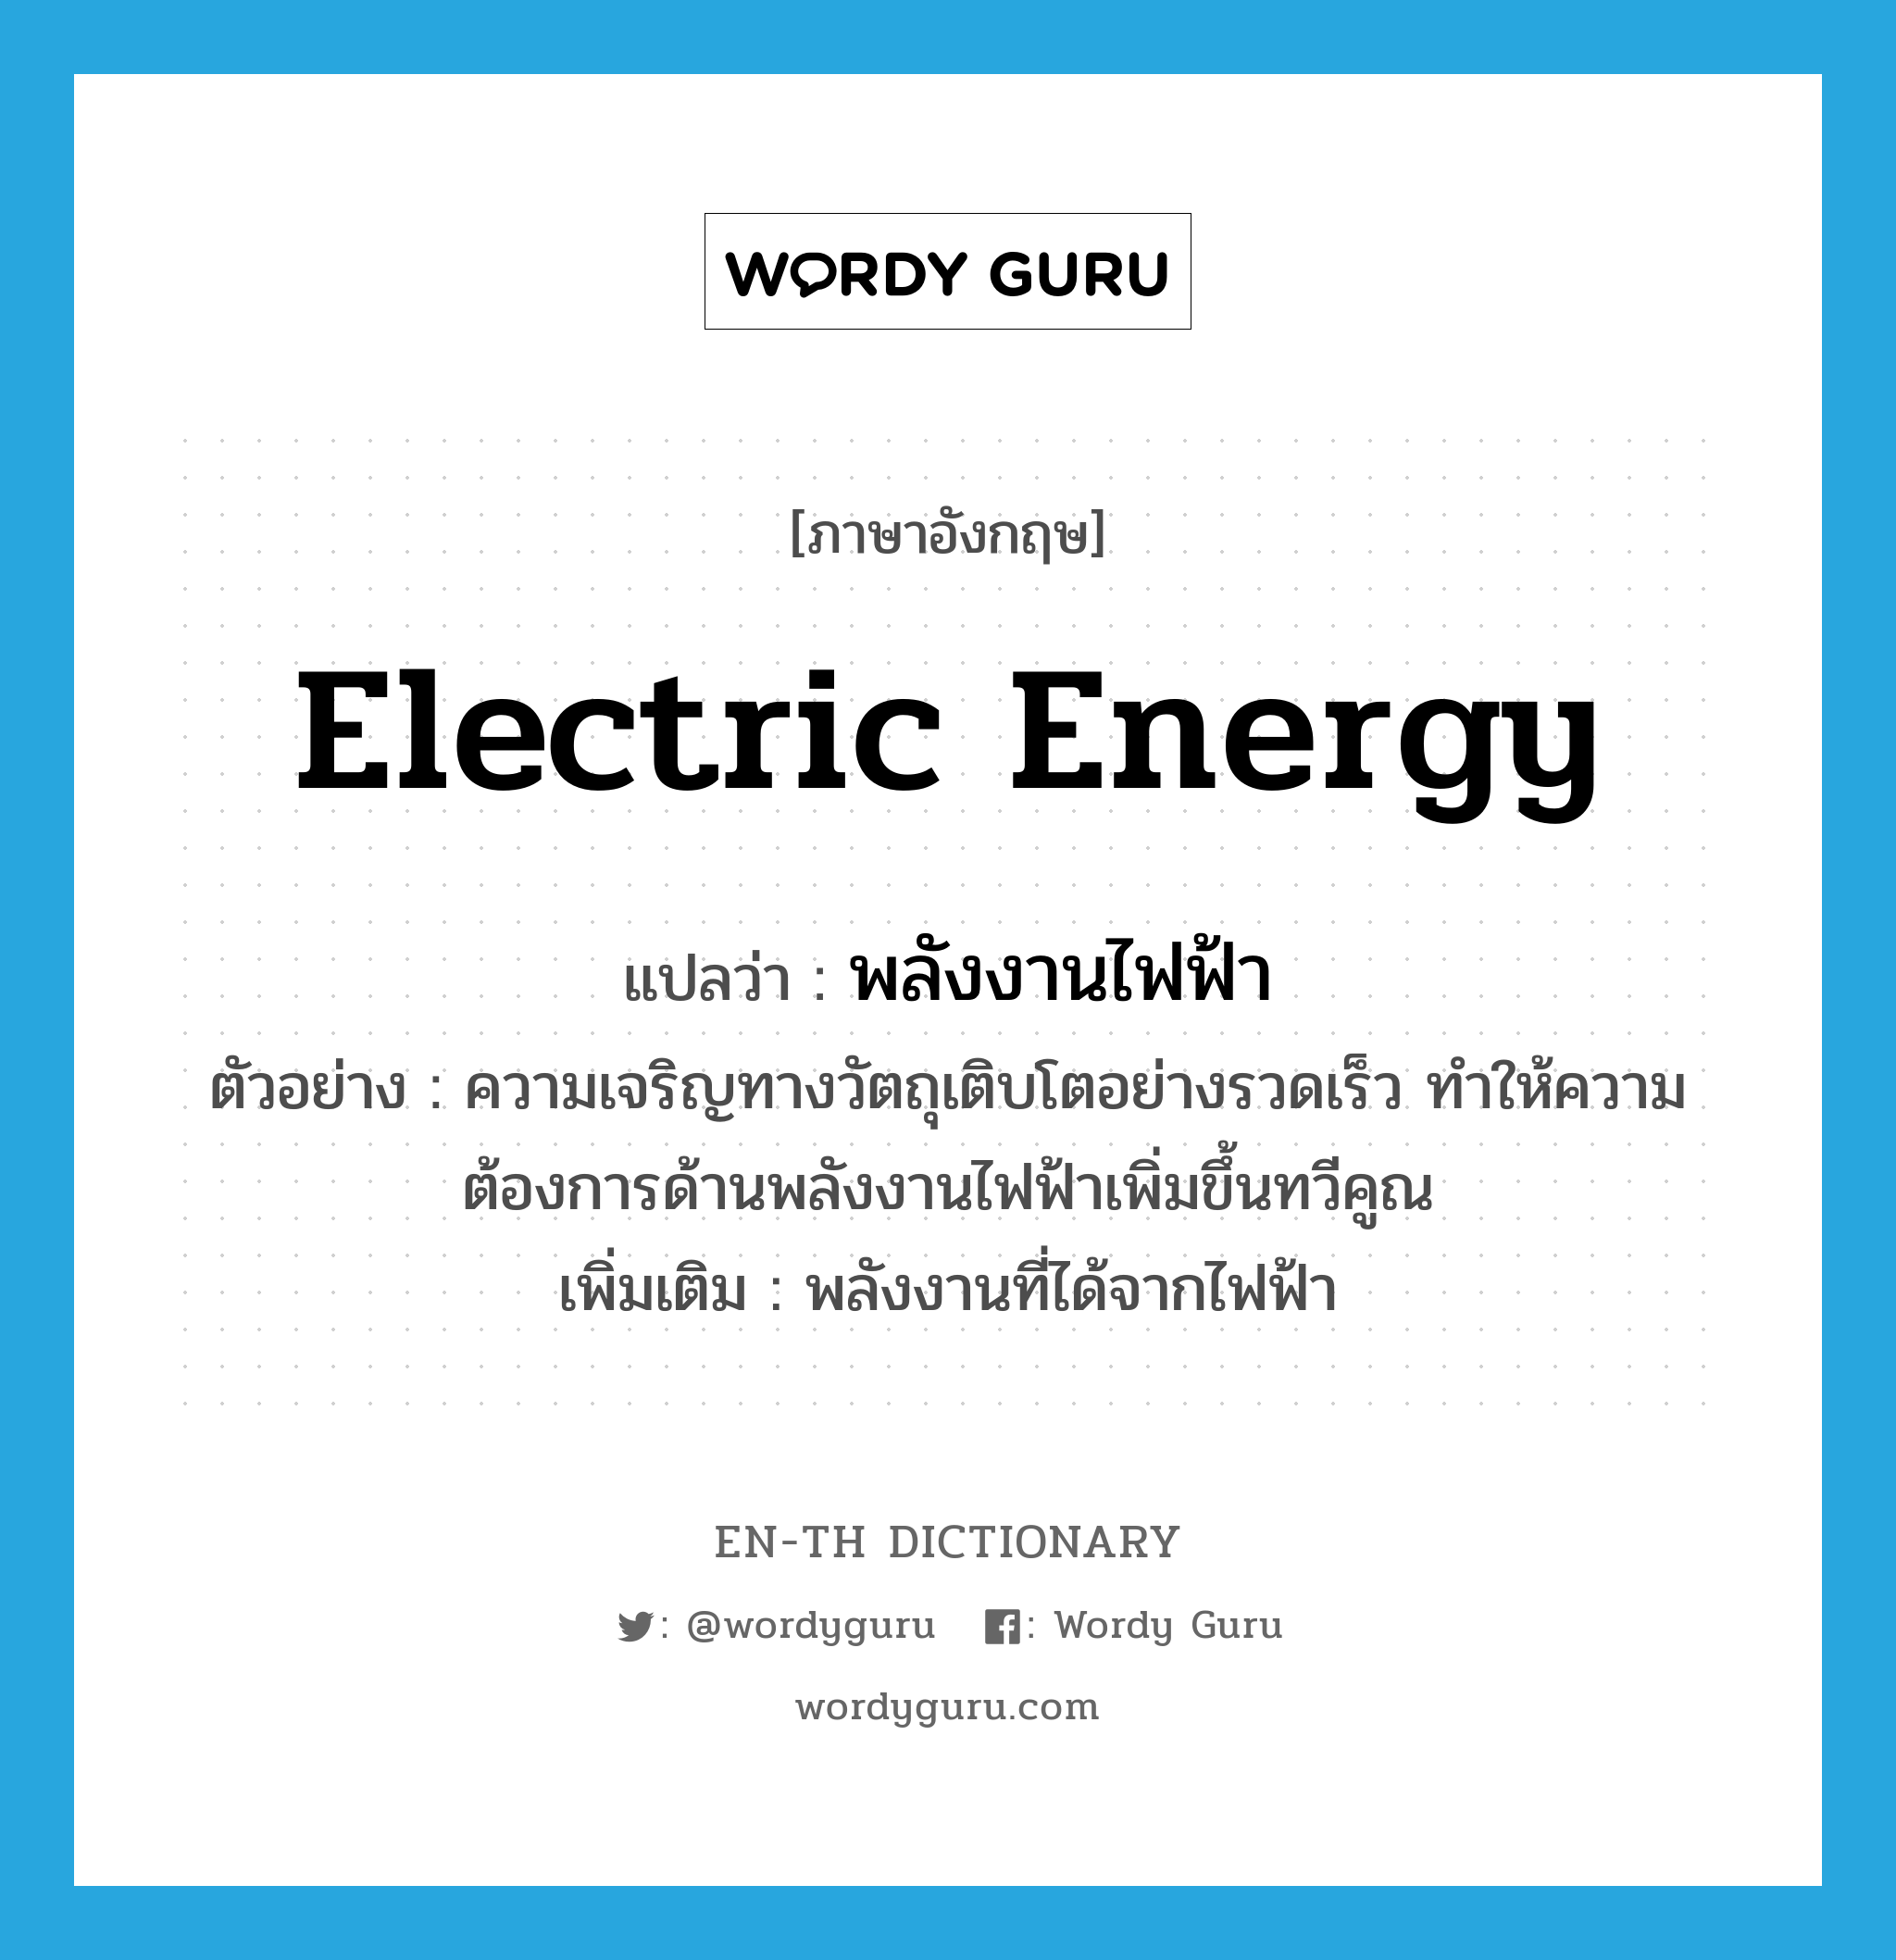 electric energy แปลว่า?, คำศัพท์ภาษาอังกฤษ electric energy แปลว่า พลังงานไฟฟ้า ประเภท N ตัวอย่าง ความเจริญทางวัตถุเติบโตอย่างรวดเร็ว ทำให้ความต้องการด้านพลังงานไฟฟ้าเพิ่มขึ้นทวีคูณ เพิ่มเติม พลังงานที่ได้จากไฟฟ้า หมวด N